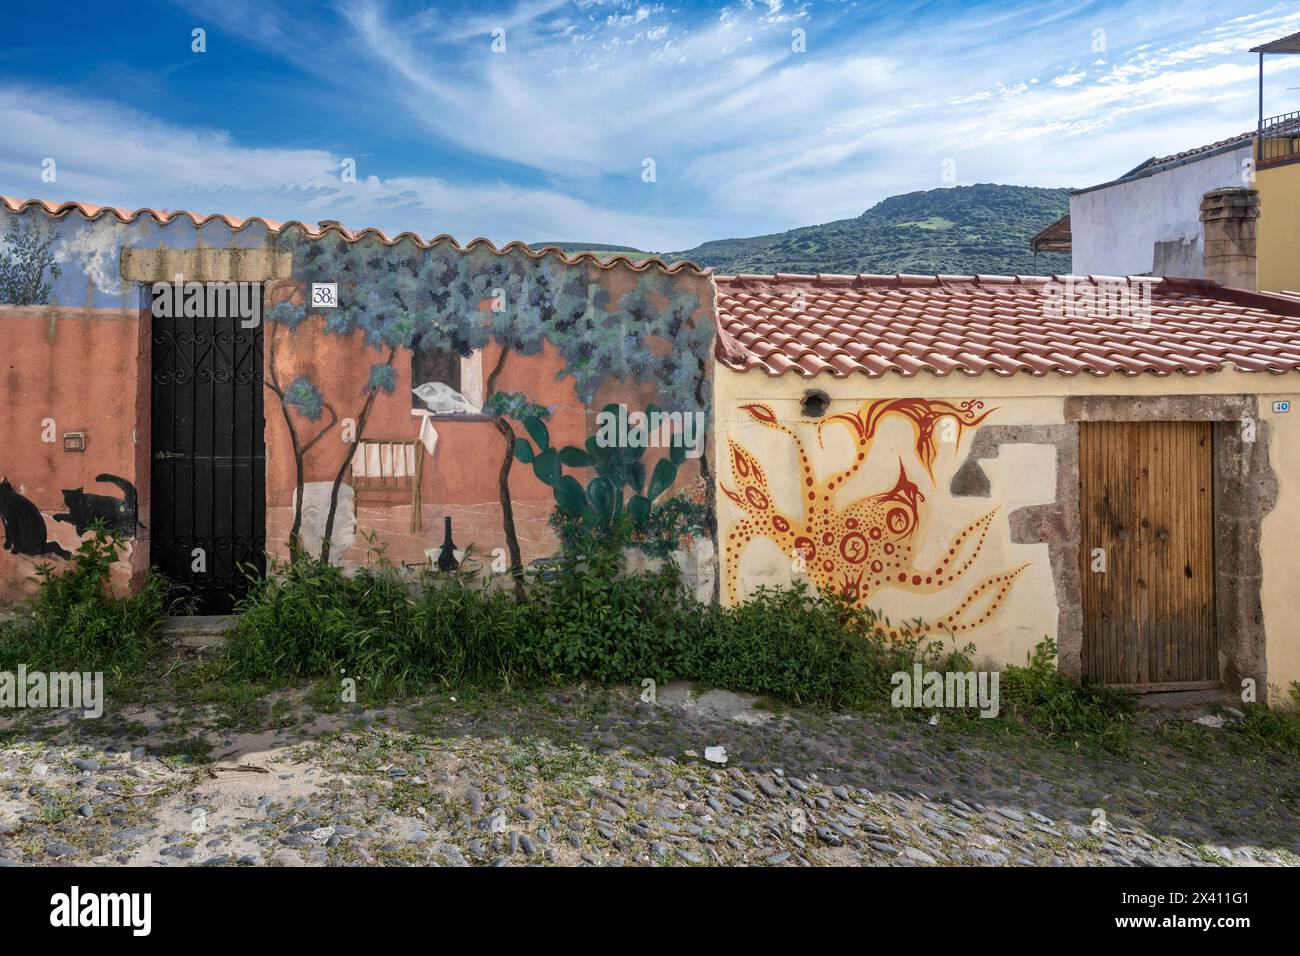 Kunstwerke auf Häusern in Bosa, Italien; Bosa, Oristano, Italien Stockfoto